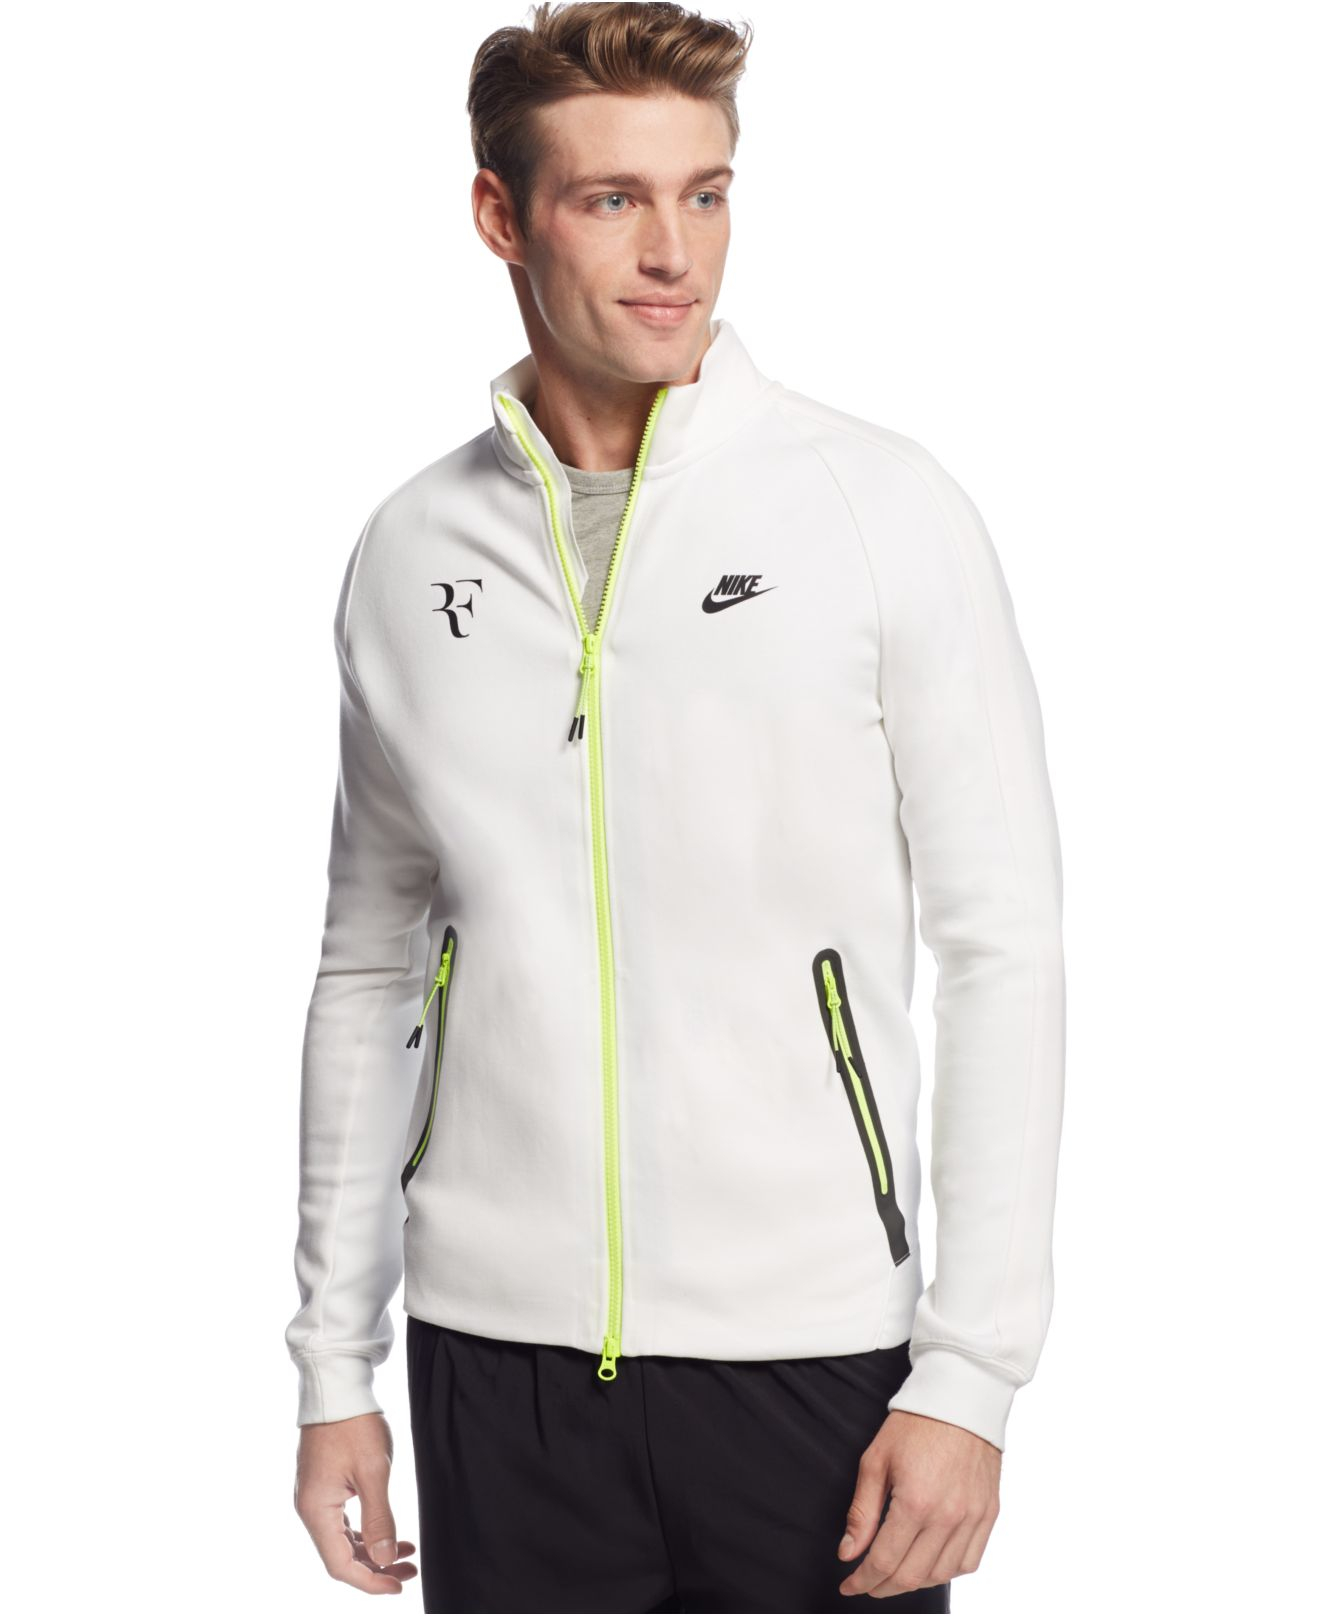 Nike Premier Rf N98 Tennis Jacket in Blue for Men - Lyst